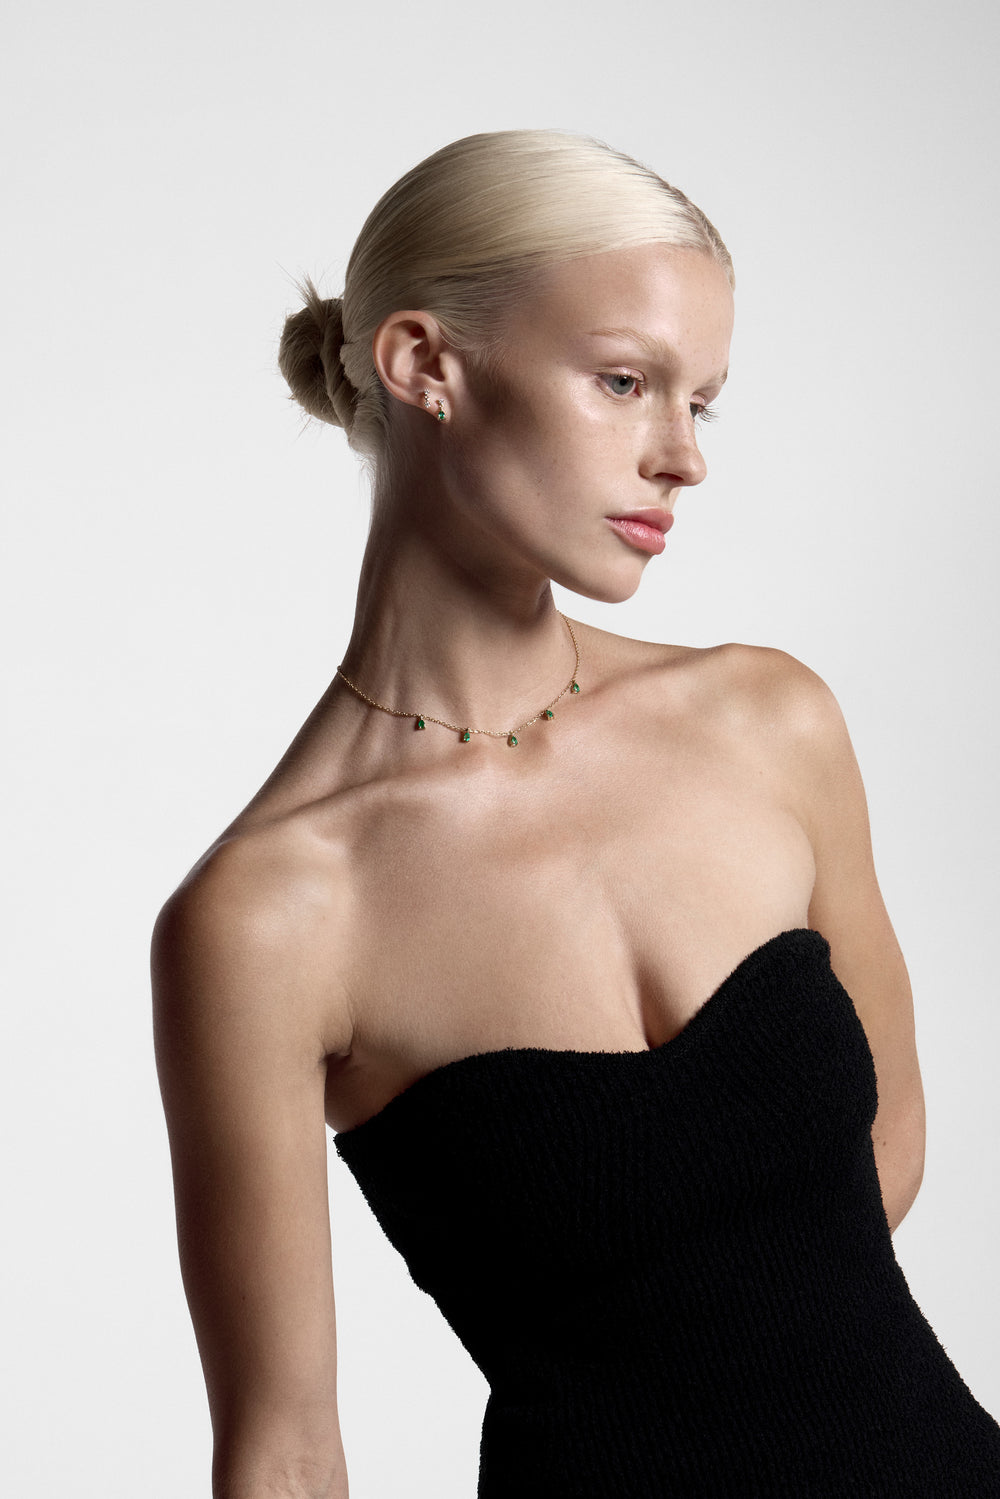 Ilona Pear Emerald Necklace | 18K White Gold